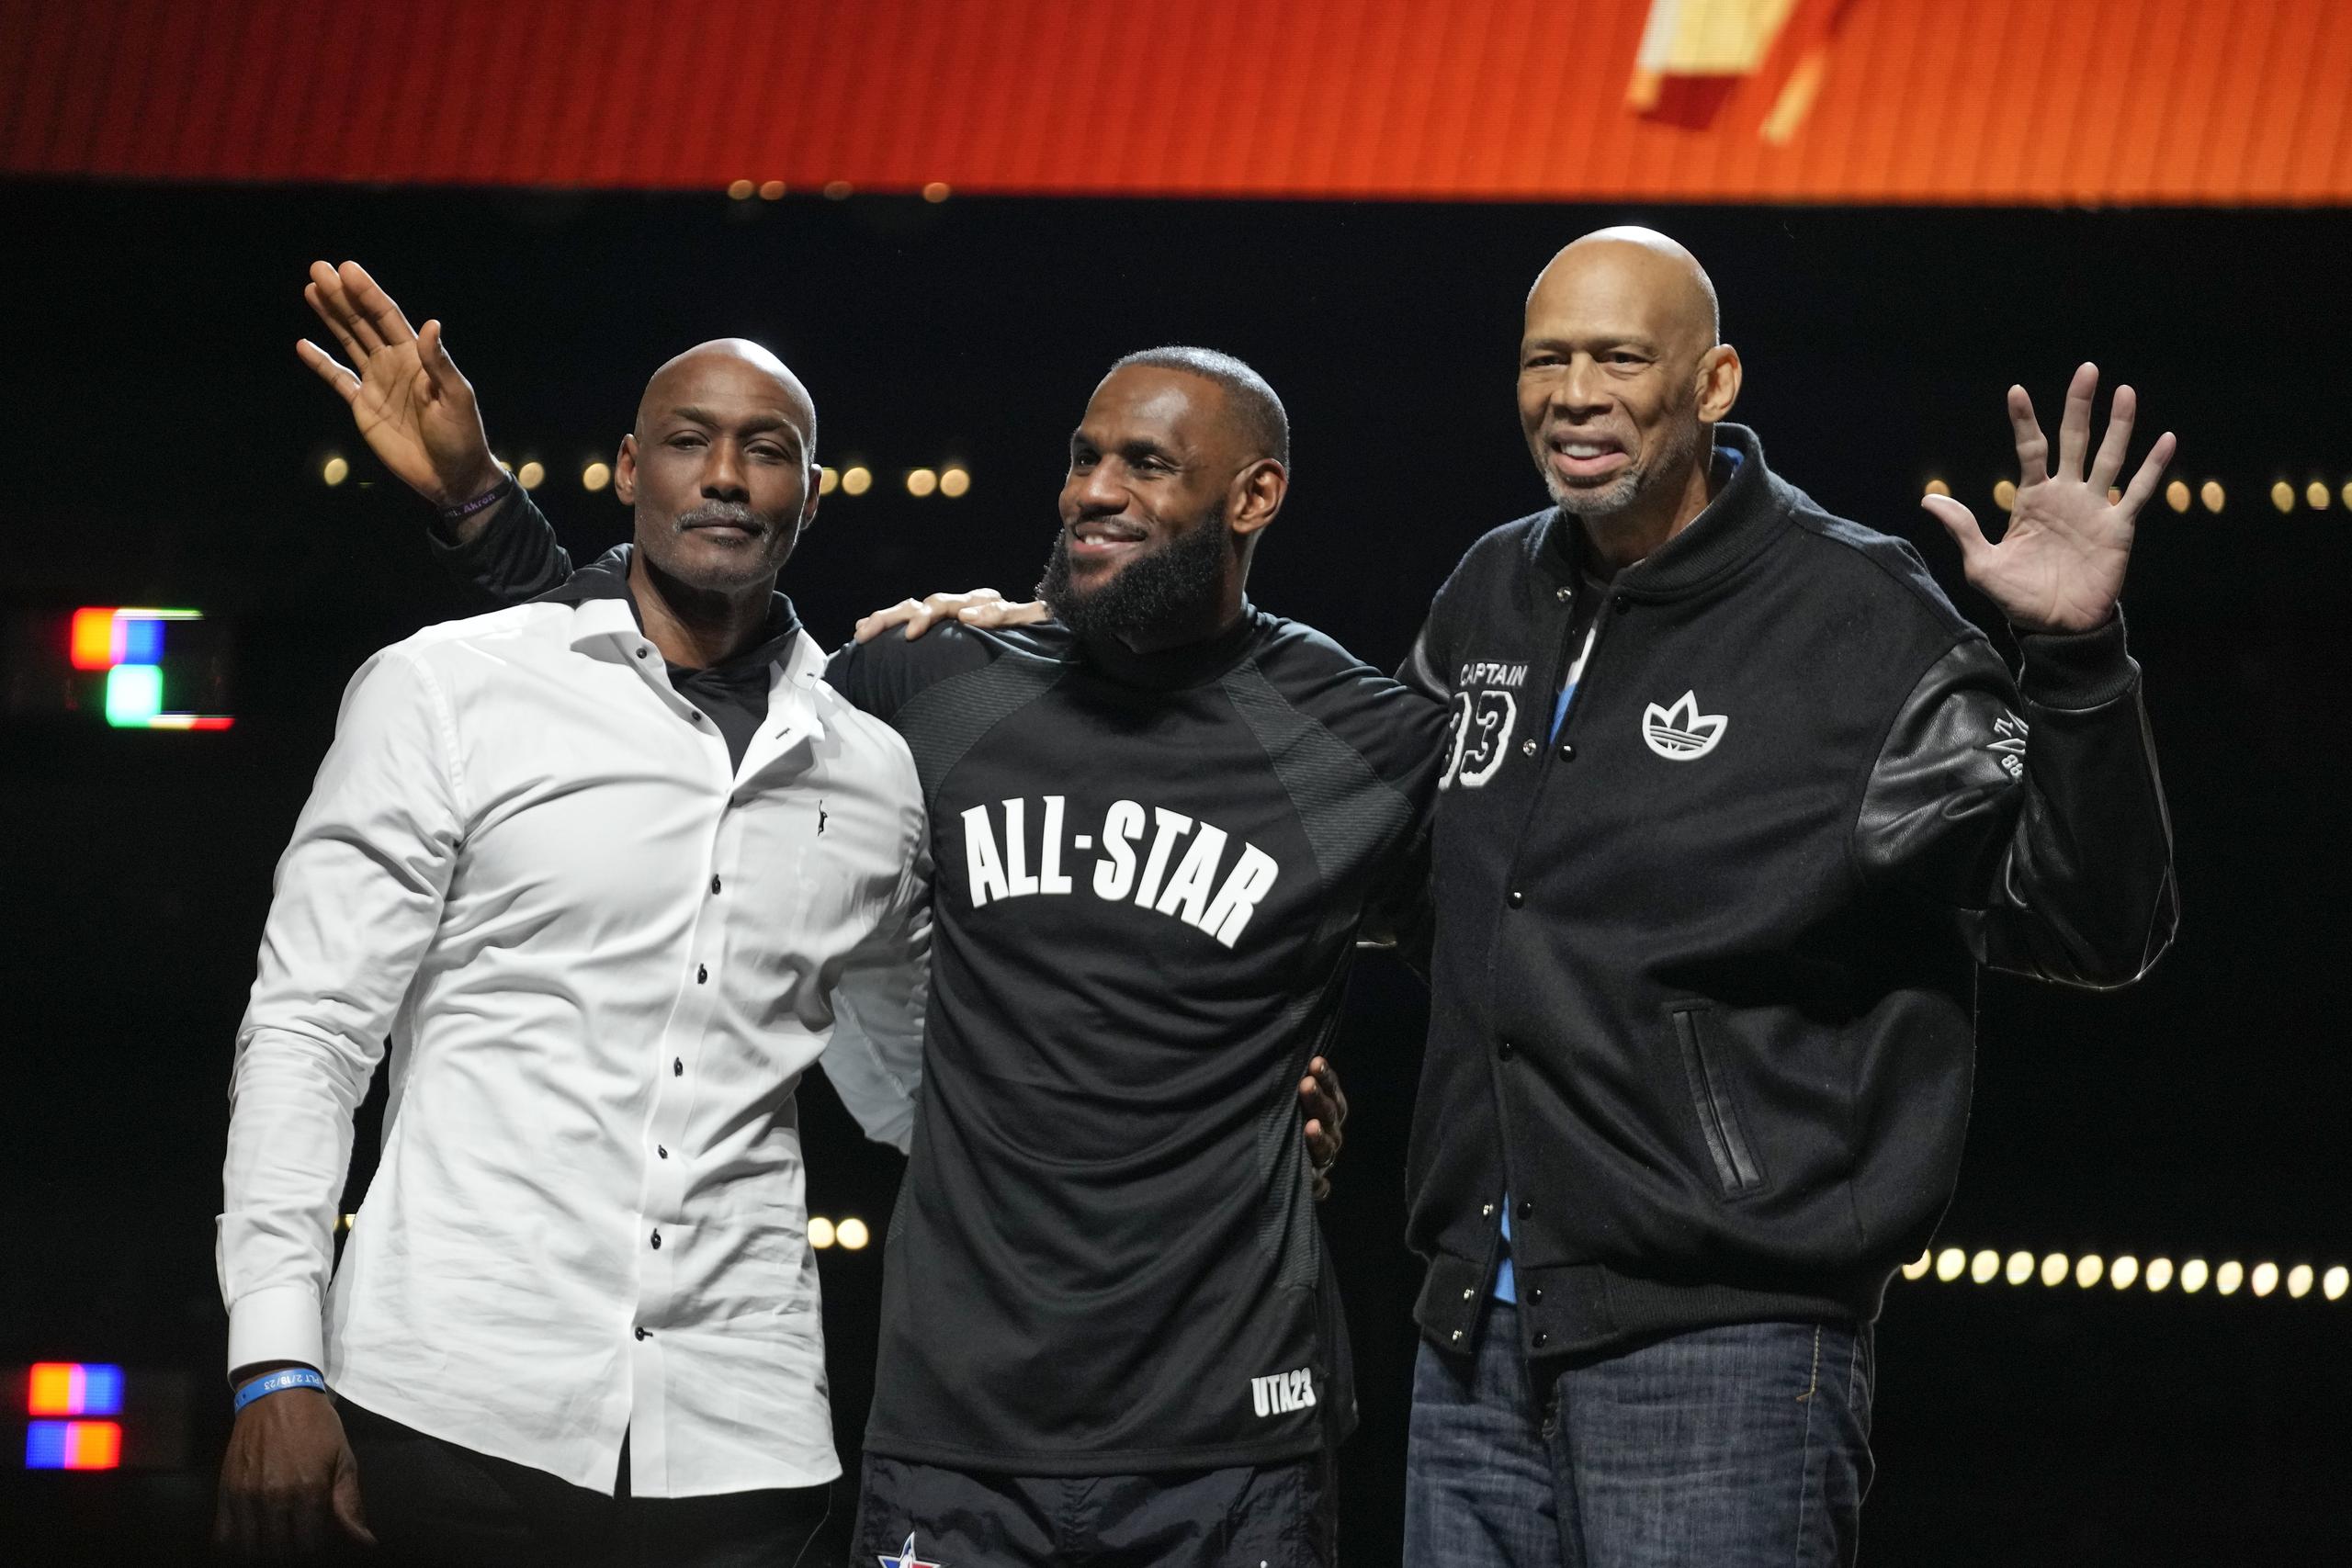 En esta foto aparece Karl Malone junto a LeBron James y Kareem Abdul-Jabbar, respectivamente el tercero, primero y segundo en la lista de los mejores anotadores en la historia de la NBA.